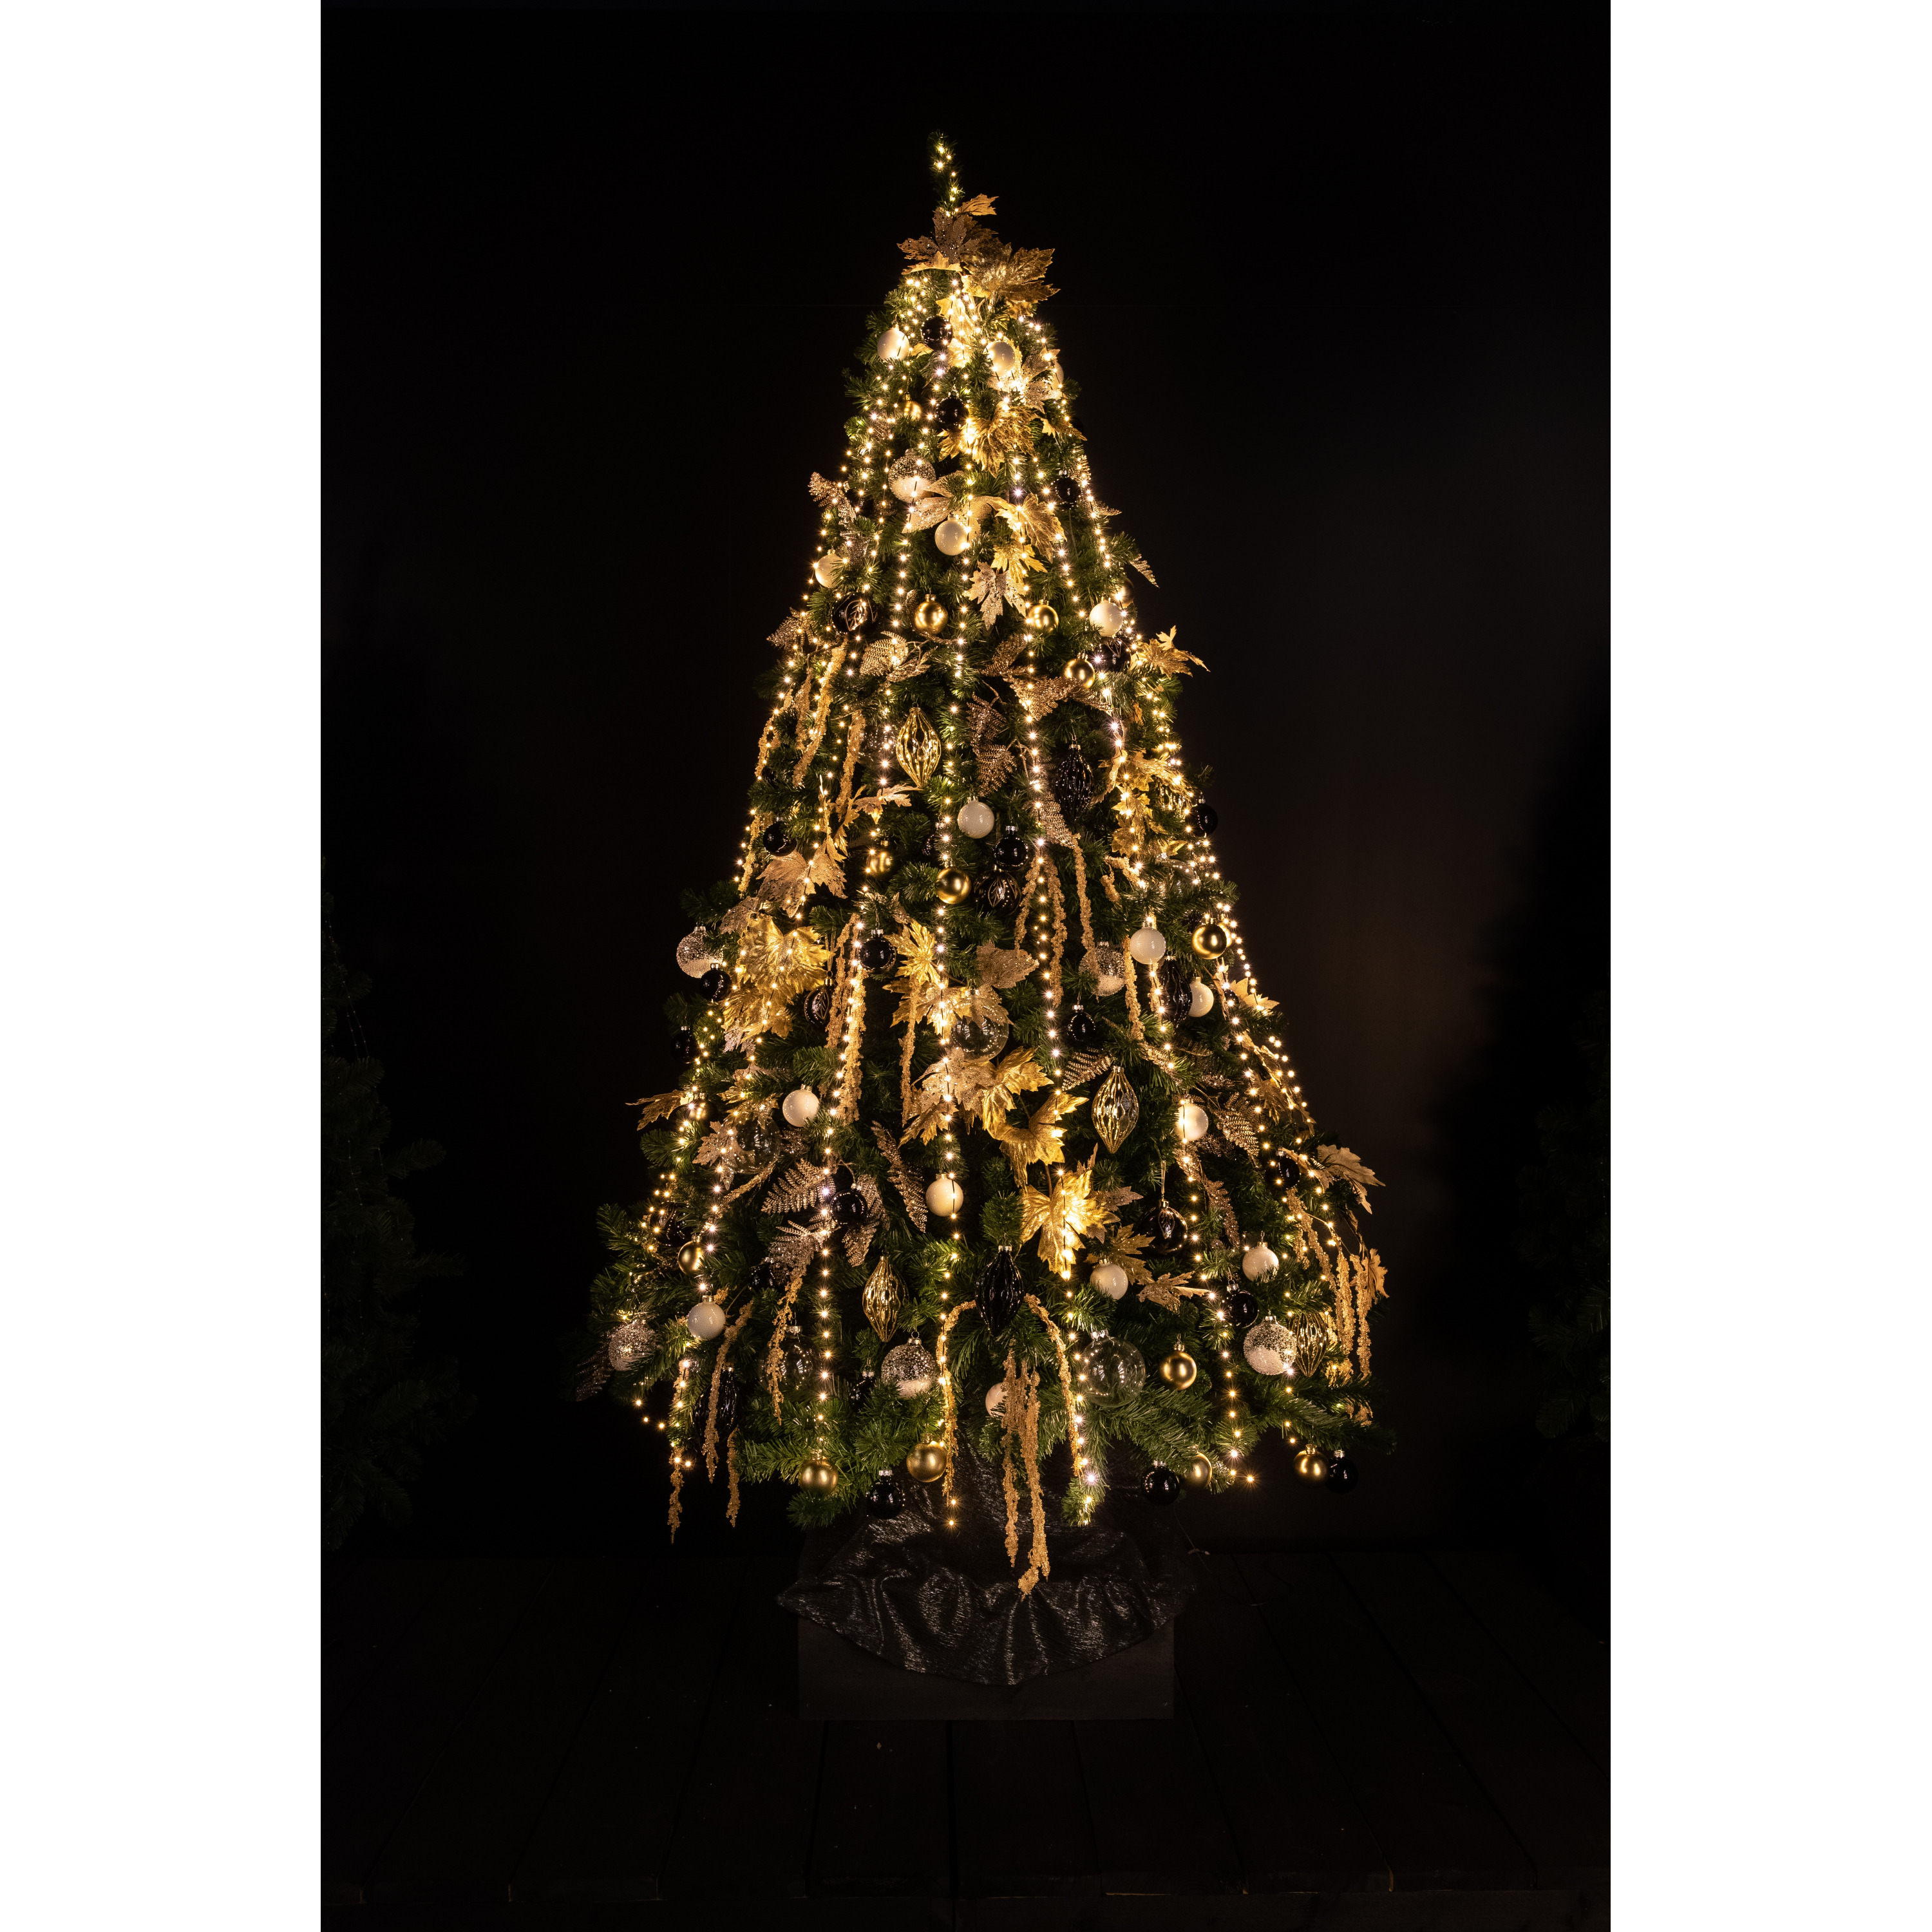 Cascade kerstverlichting -700 leds warm wit voor kerstboom 180 cm